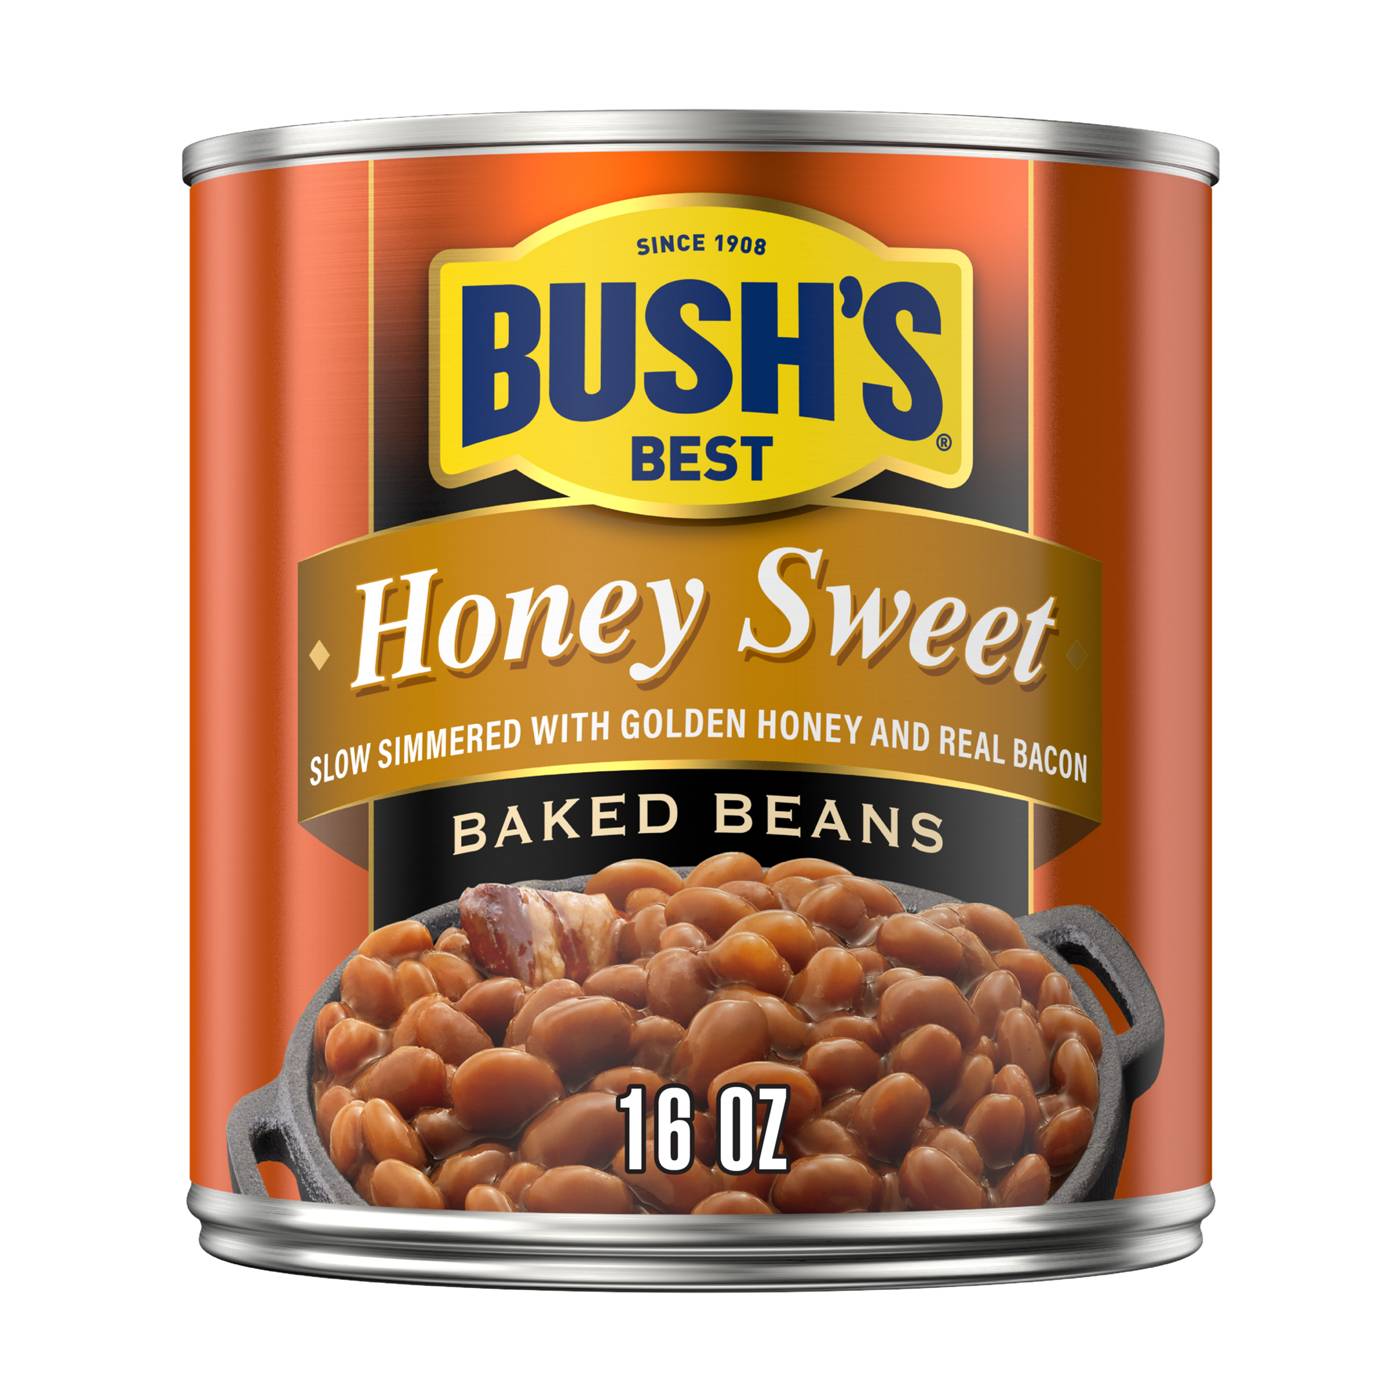 Bush's Best Honey Sweet Baked Beans; image 1 of 4